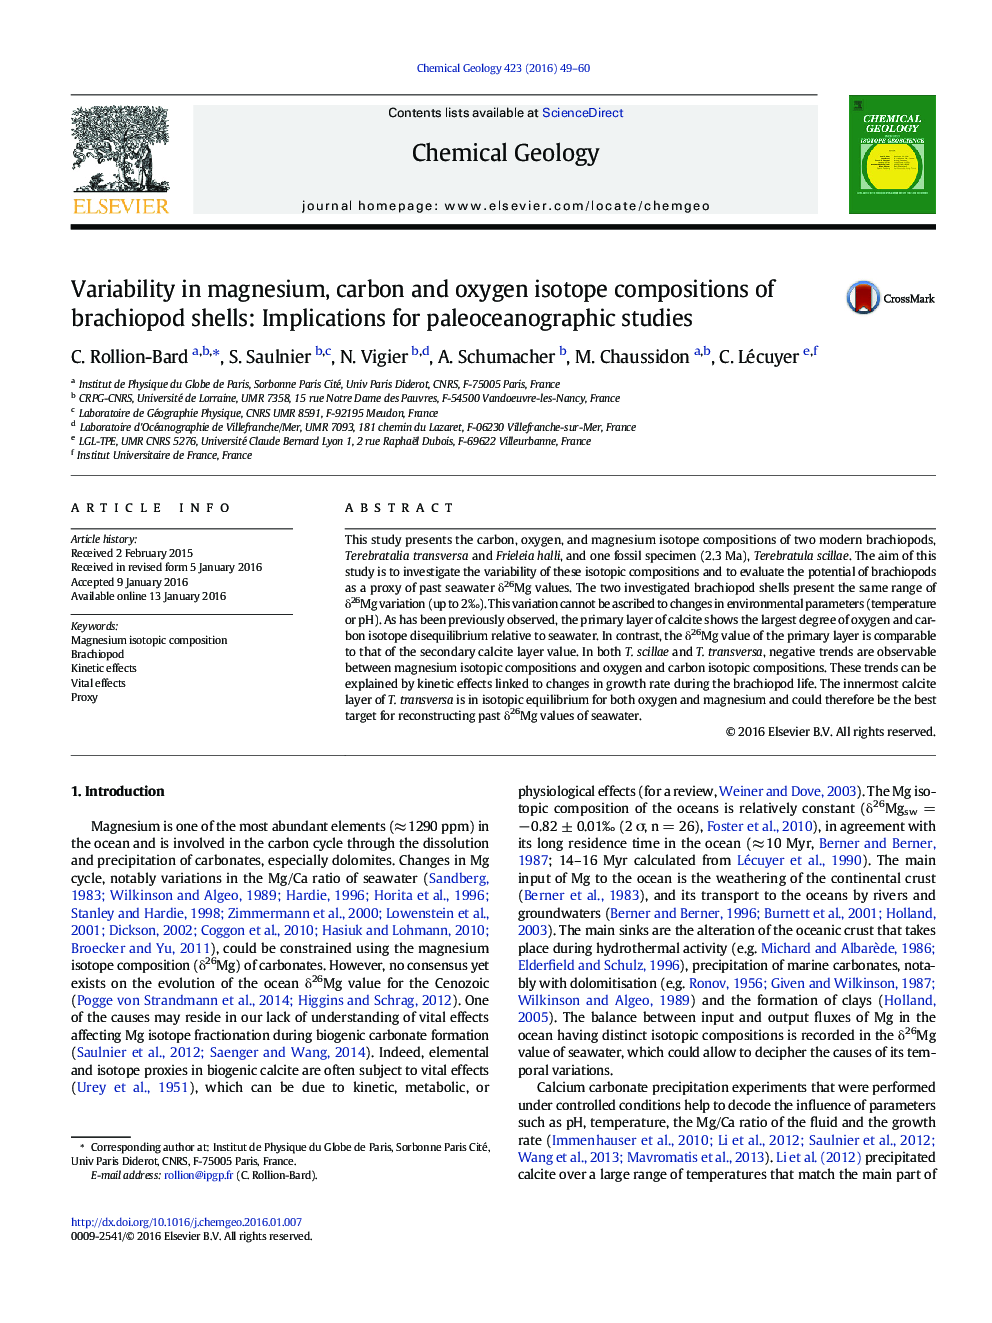 تغییرات ترکیبات ایزوتوپی منیزیم، کربن و اکسیژن پوسته های برقیوپود: تاثیرات برای مطالعات پائئوسکوئولوژیک 